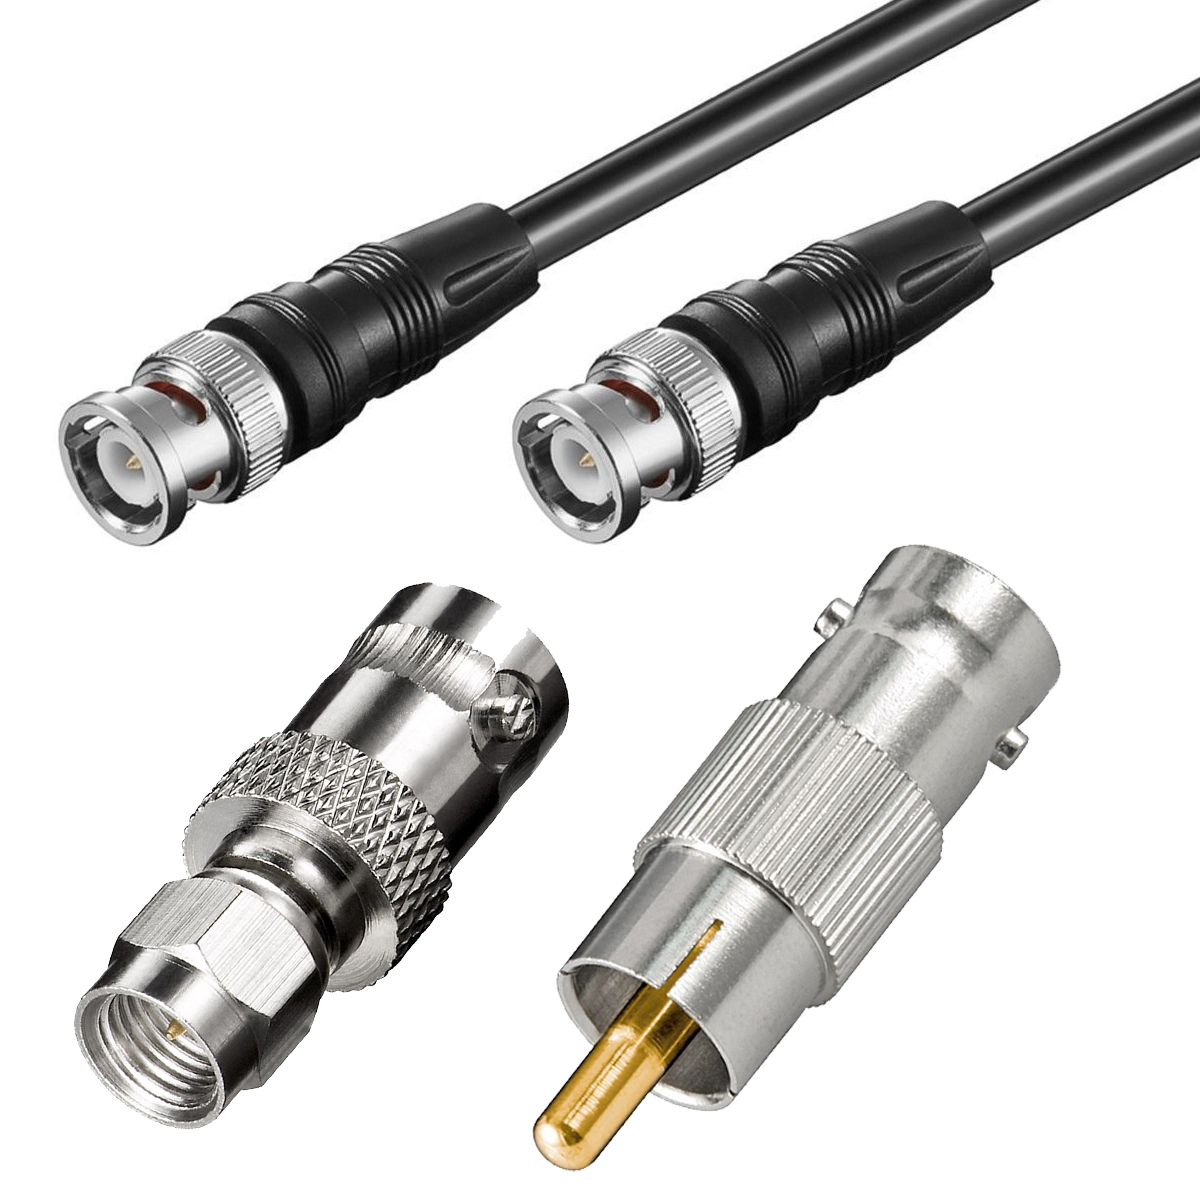 SMA / Cinch / BNC-Kabel Adapter Set für SDR